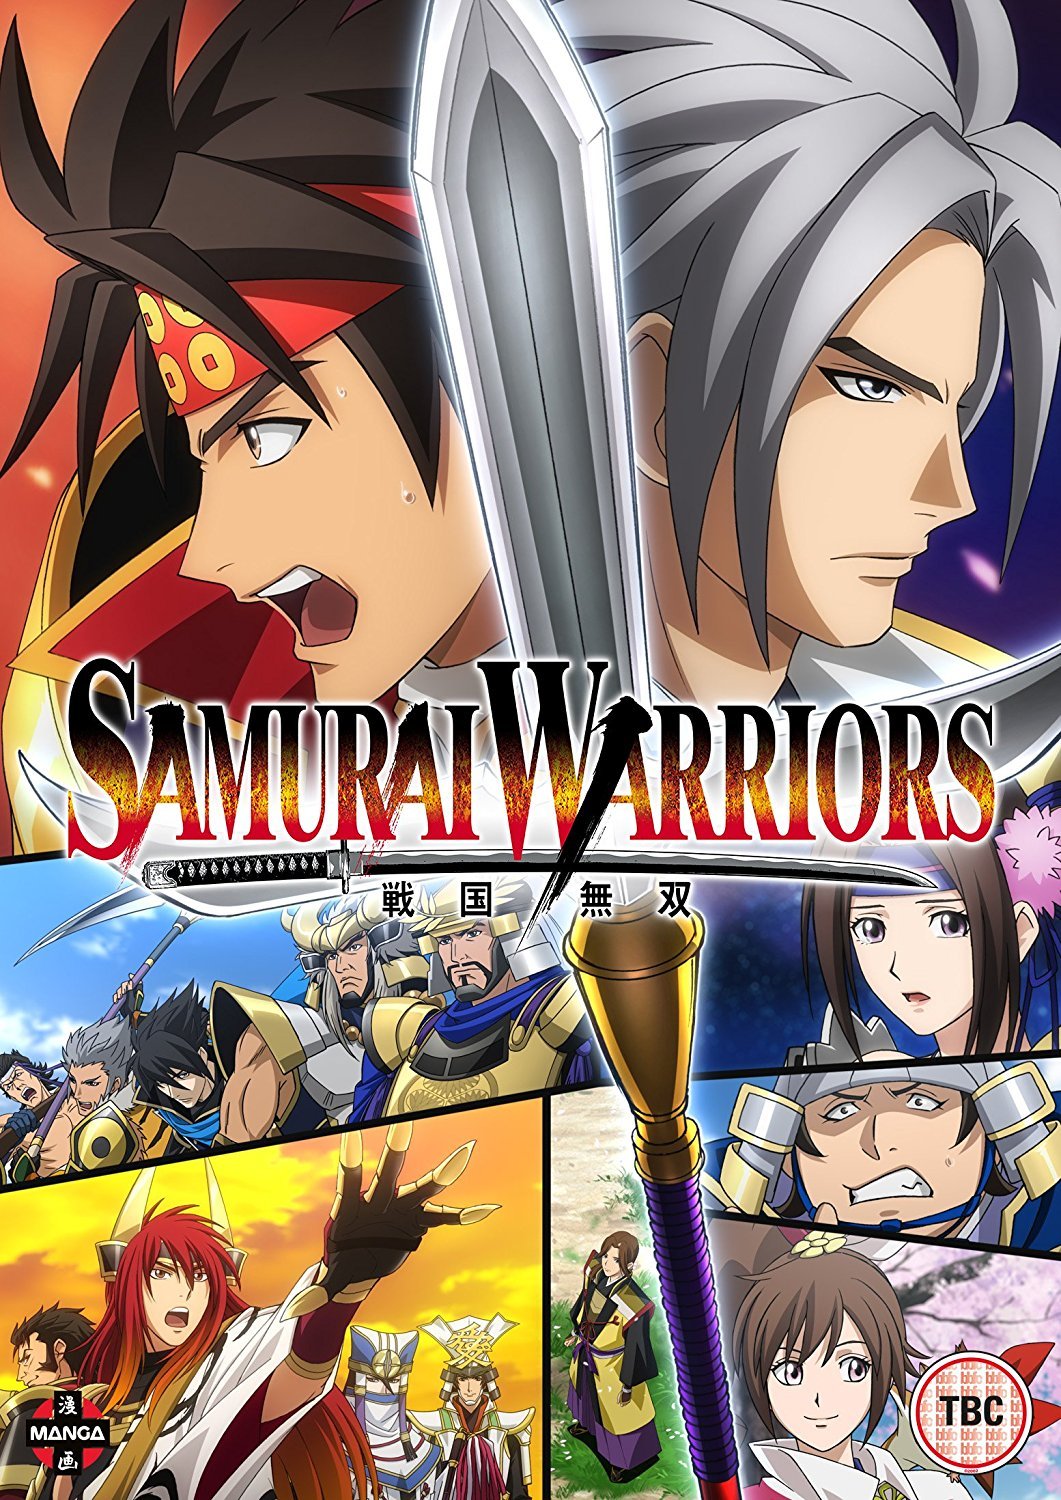 Manga/Anime] 5 Samurai  Samurai warriors anime, Manga anime, Anime